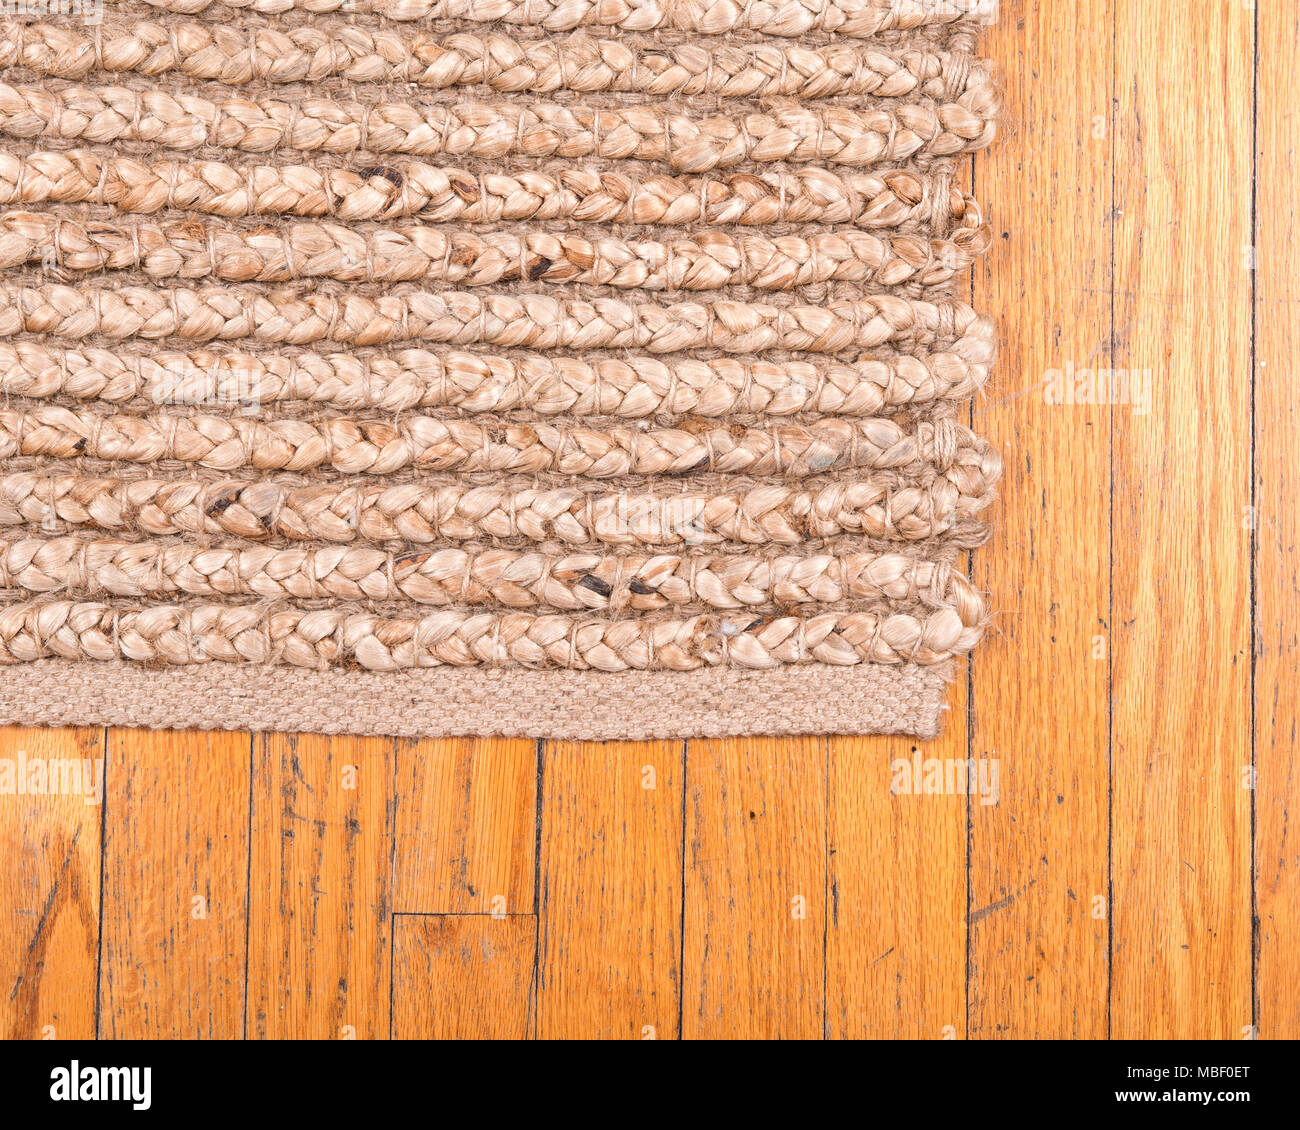 Comprar Alfombras antiguas Ar, alfombra redonda de yute trenzada hecha a  mano, decoración de suelo, alfombra redonda de yute/alfombra de suelo